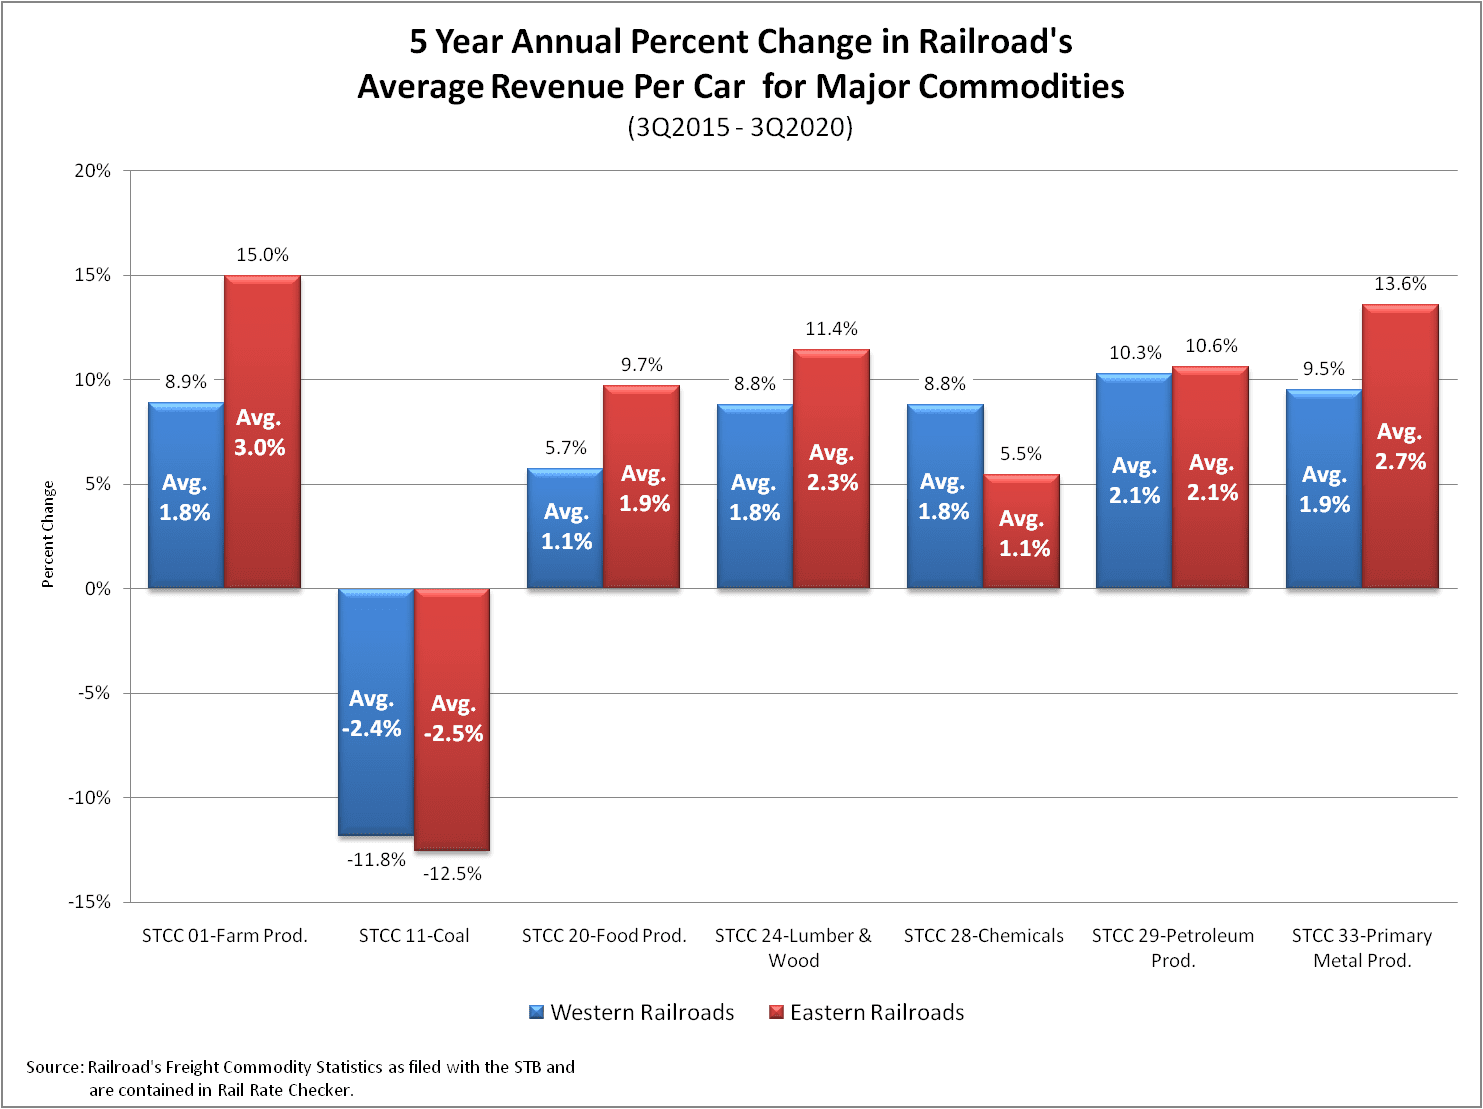 Annual Percent Change in Railroad's Average Revenue per Car